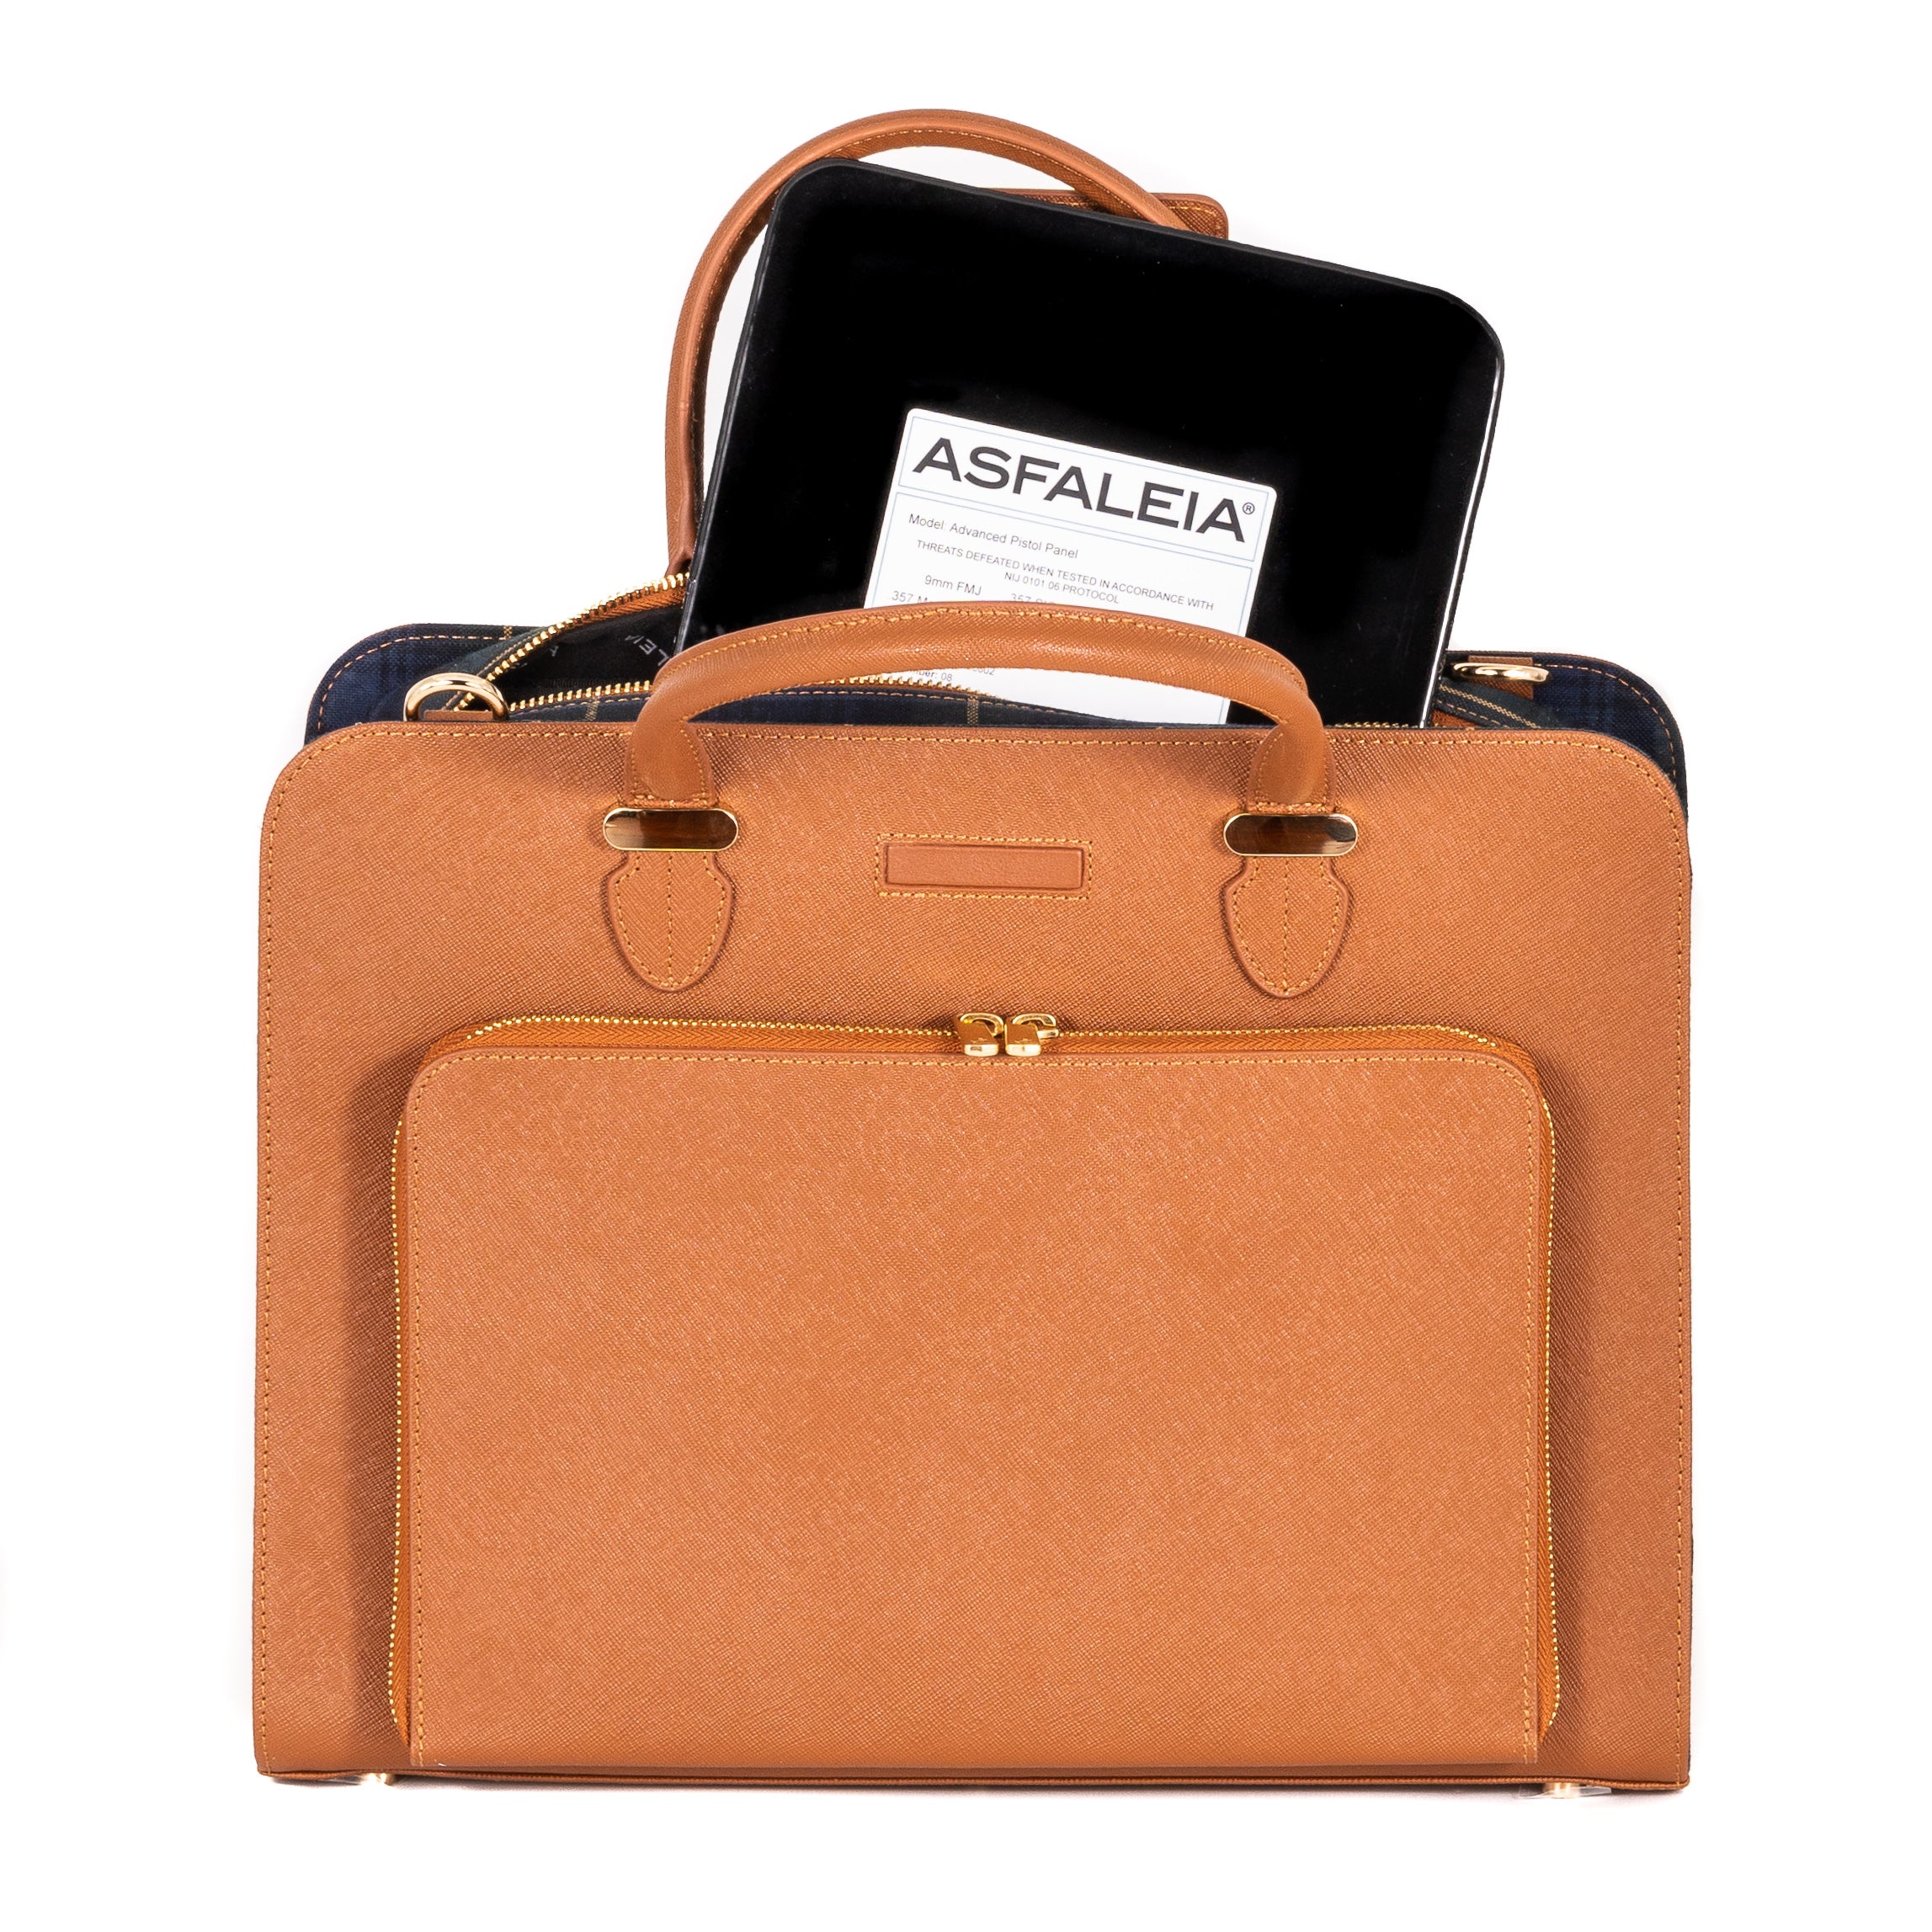 Protocol computer/laptop travel bag Black w/Shoulder Strap | eBay